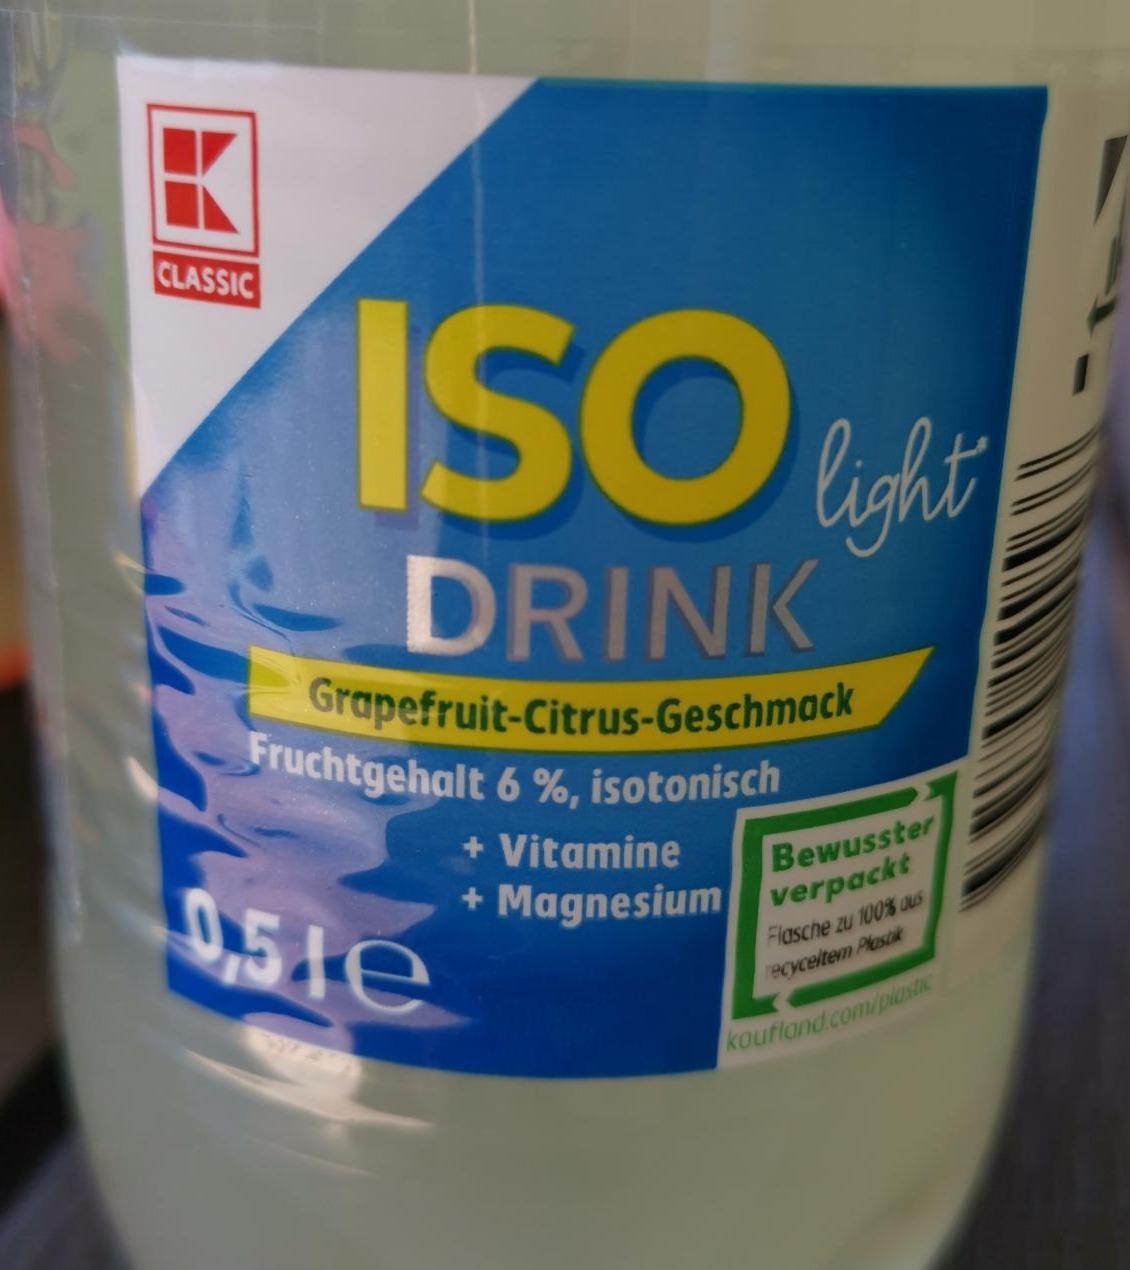 Fotografie - ISO Drink Light Grapefruit-Citrus-Geschmack K-Classic